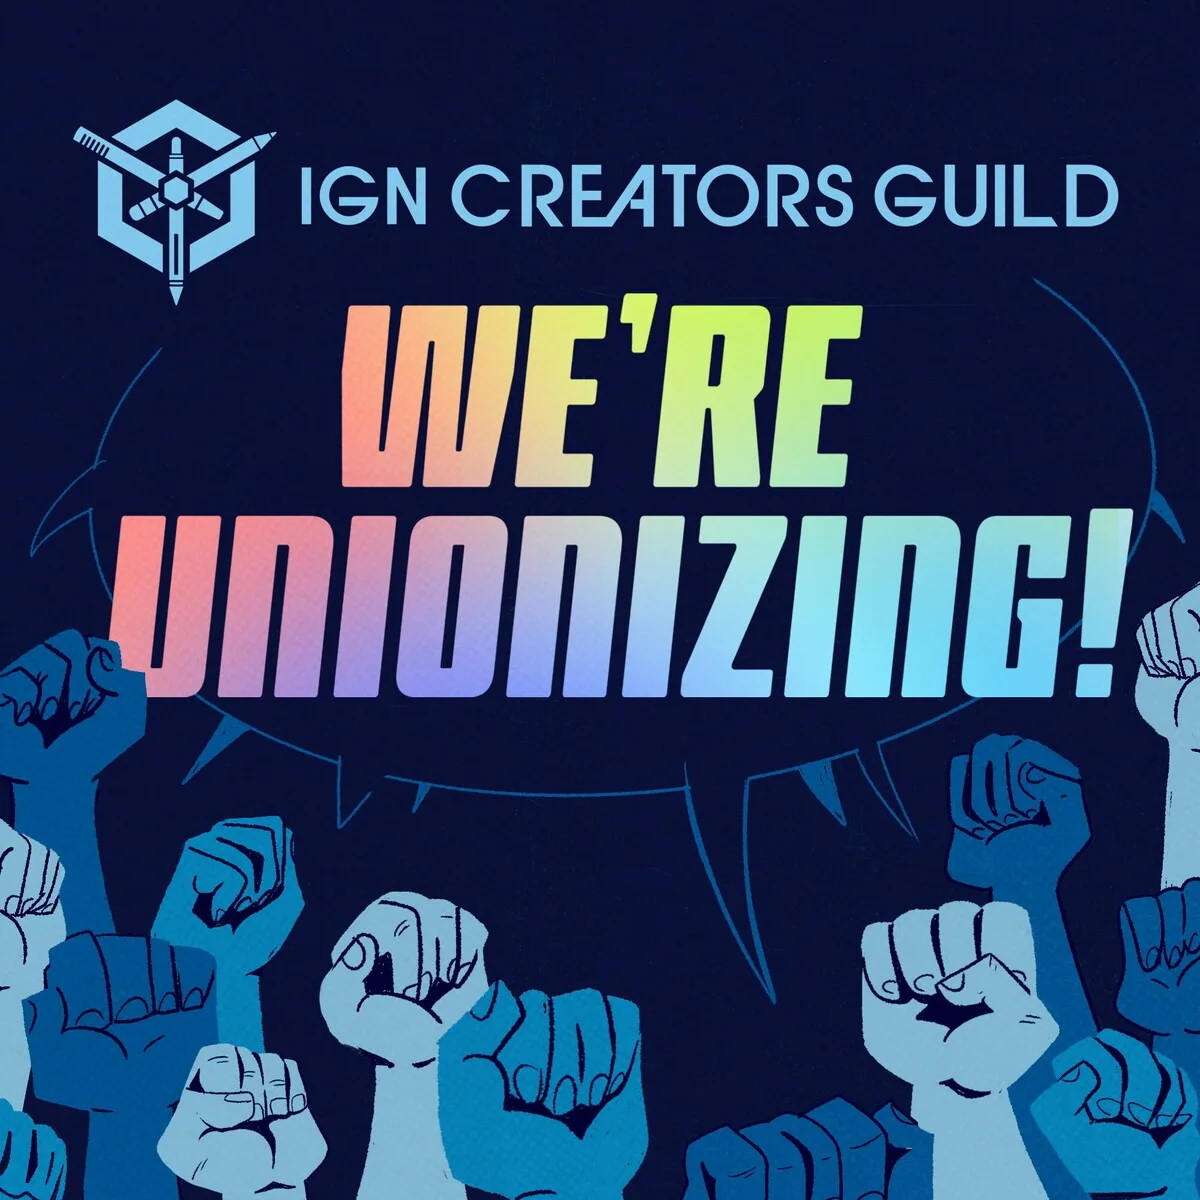 Сотрудники IGN выразили недовольство зарплатой и планируют создать профсоюз - фото 1